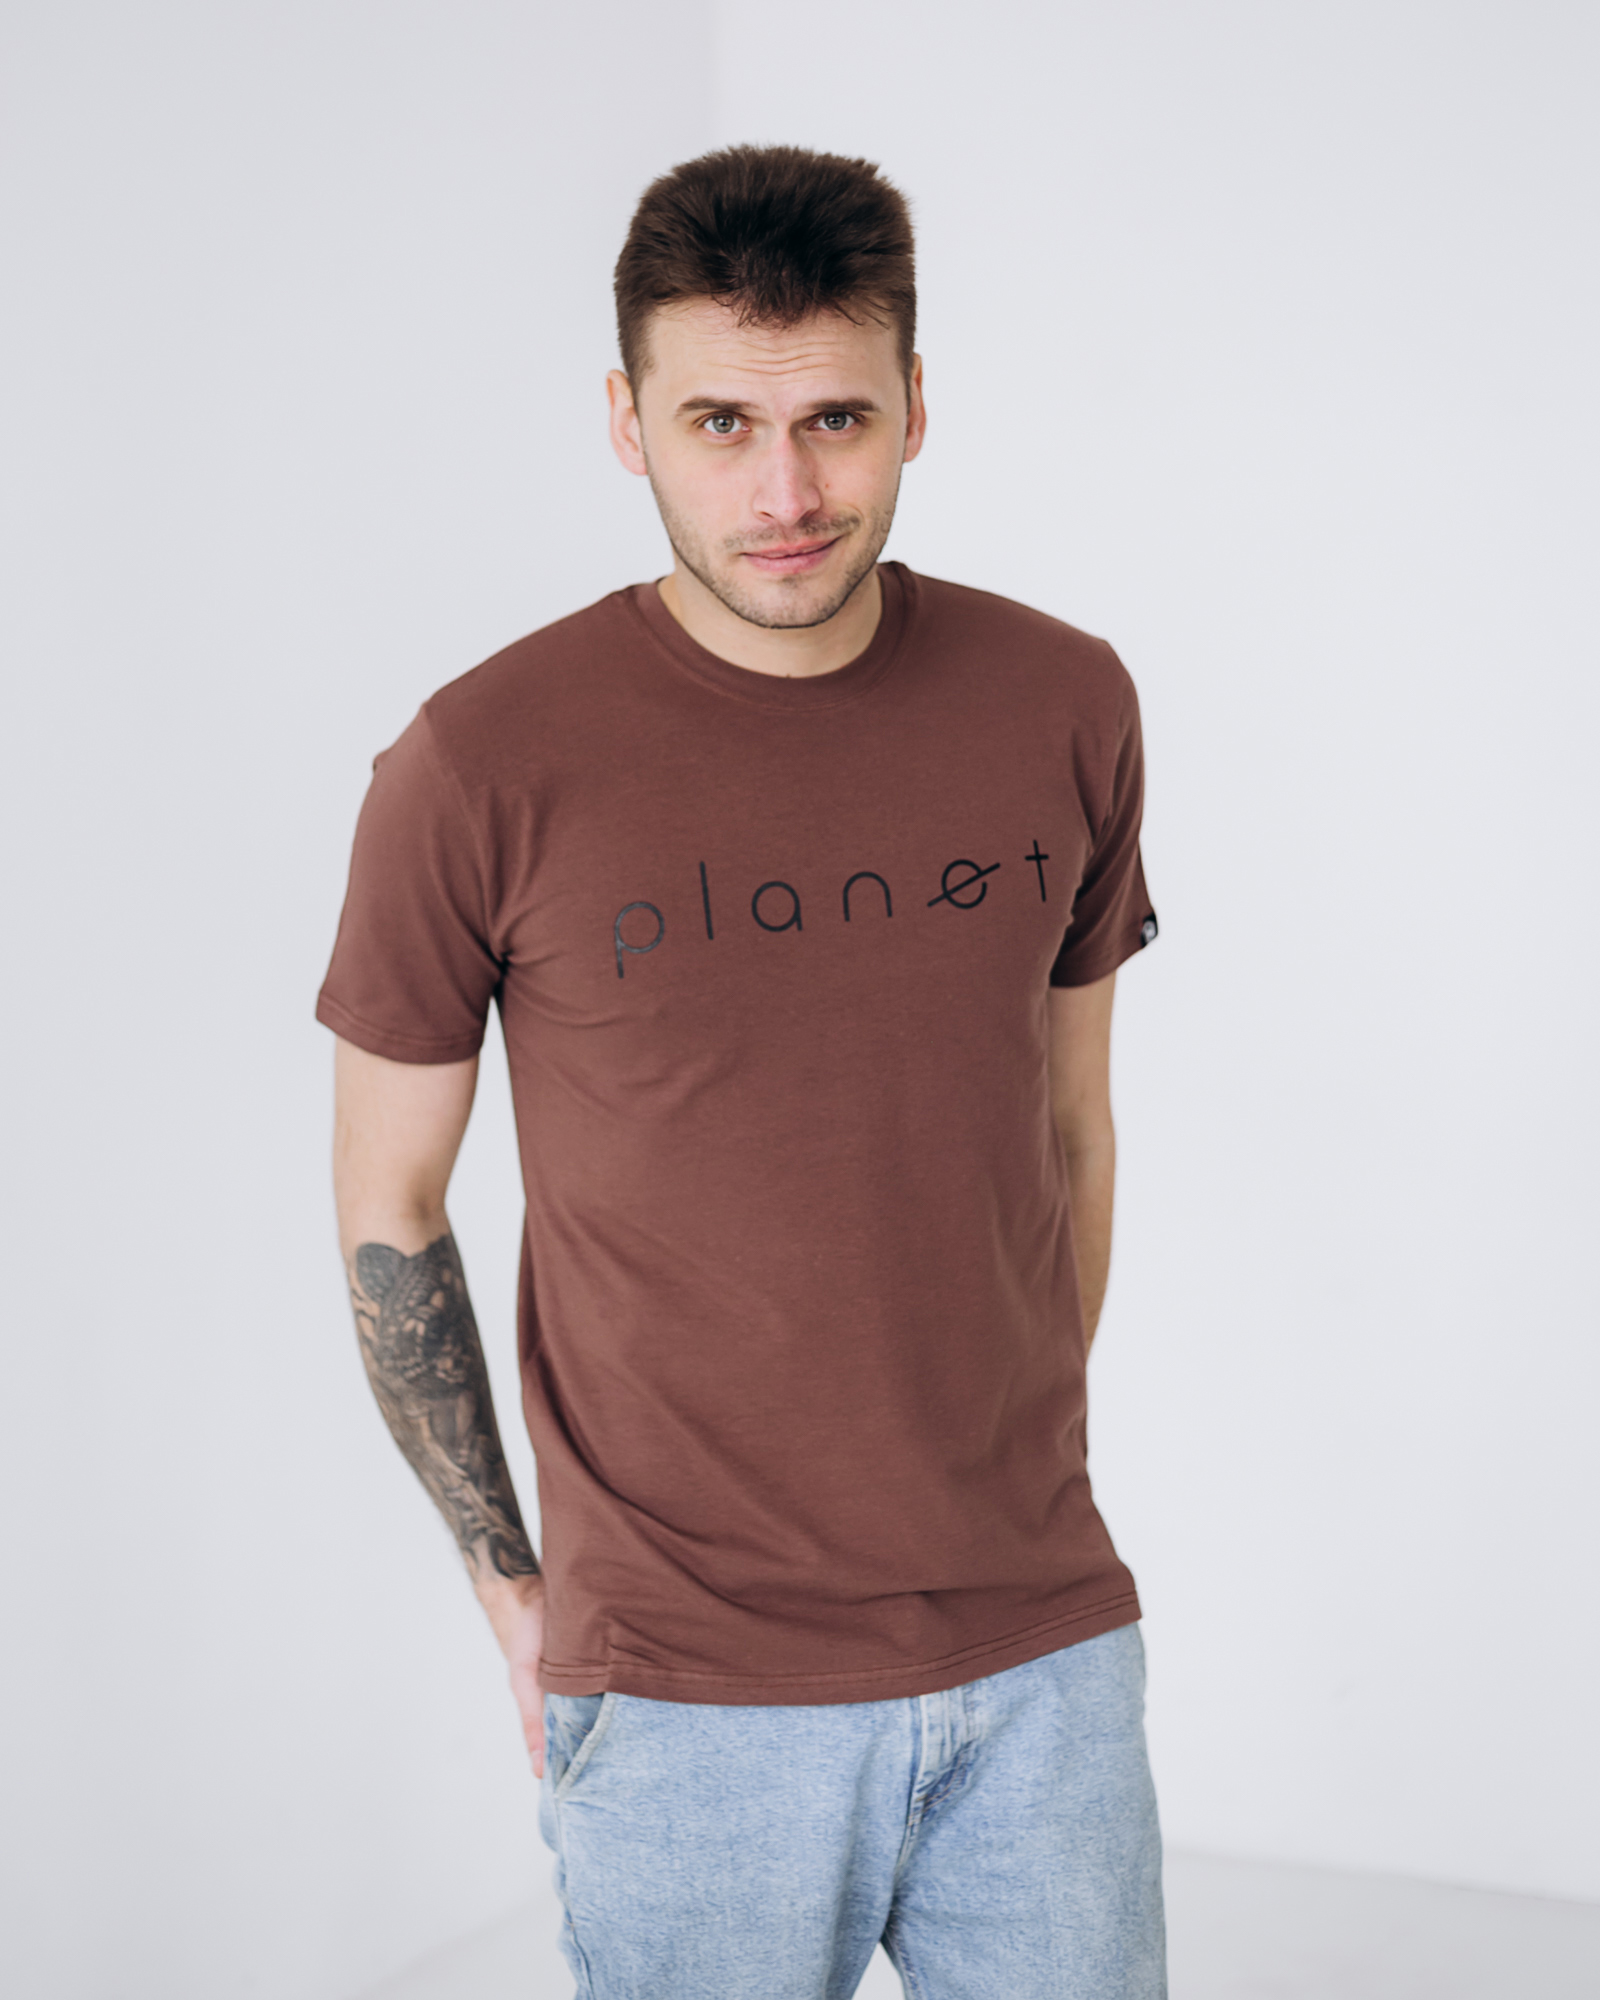 Мужская футболка planet 40102